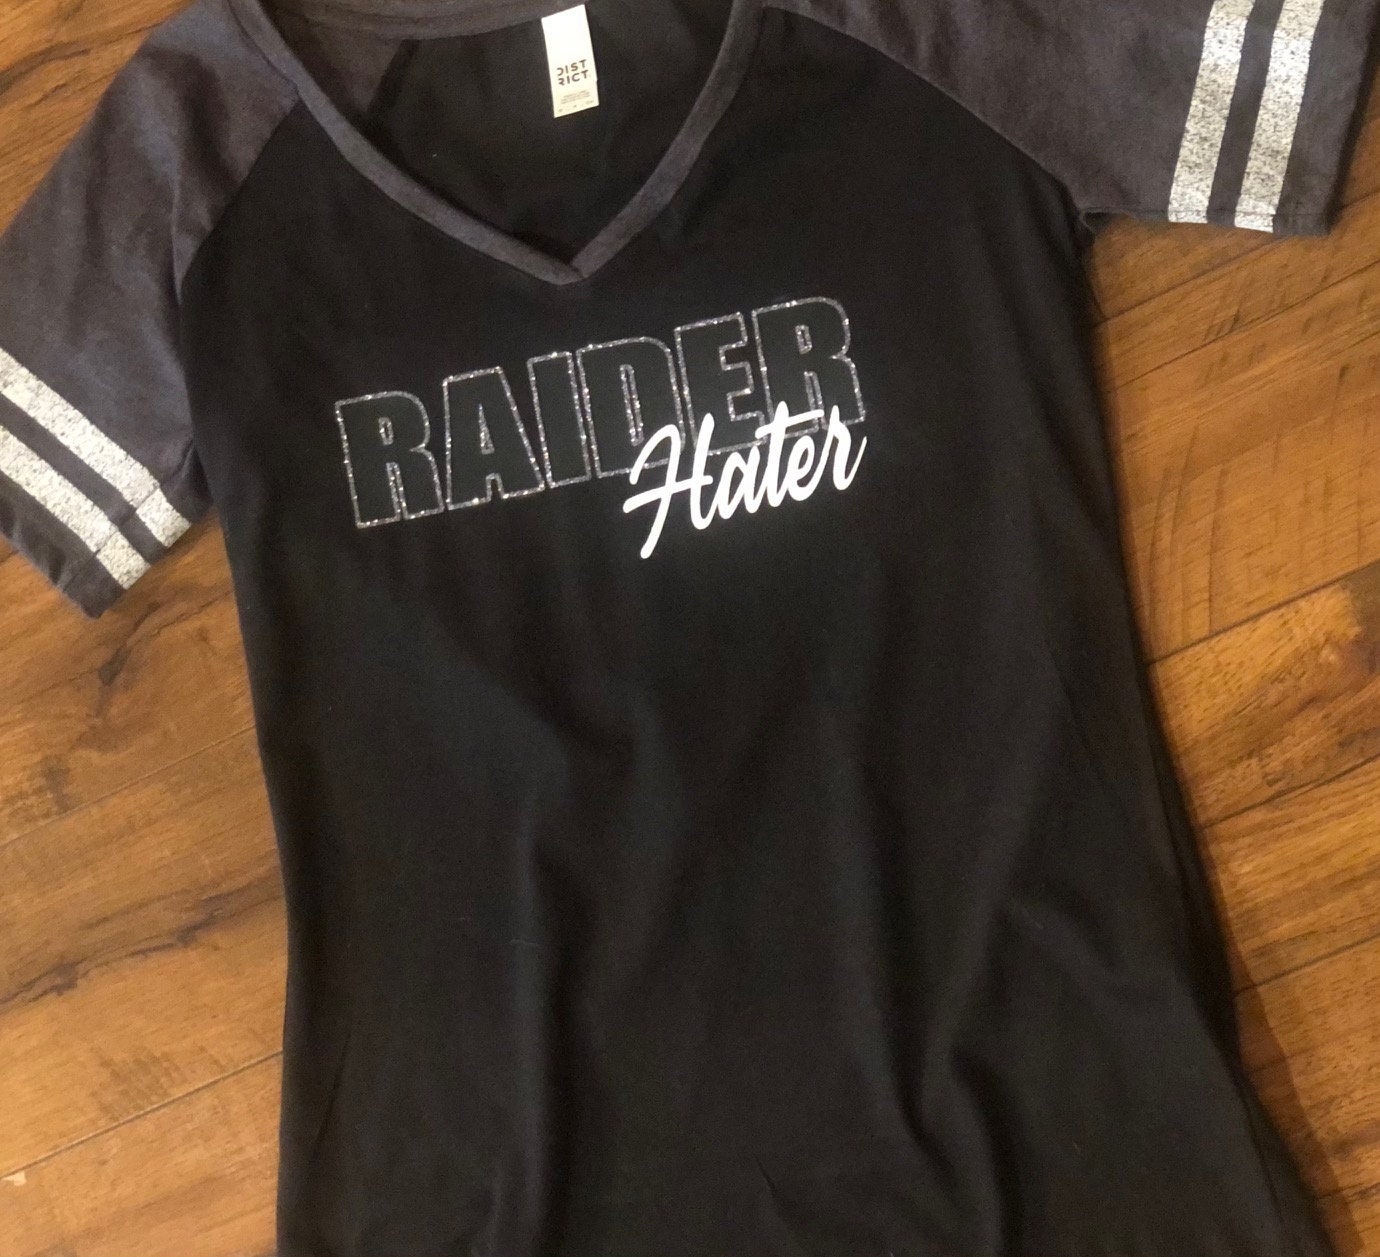 Las Vegas Raiders NFL Kryptek Camo Custom Name 3D Hoodie, Sweater, T Shirt  All Over Printed - Banantees